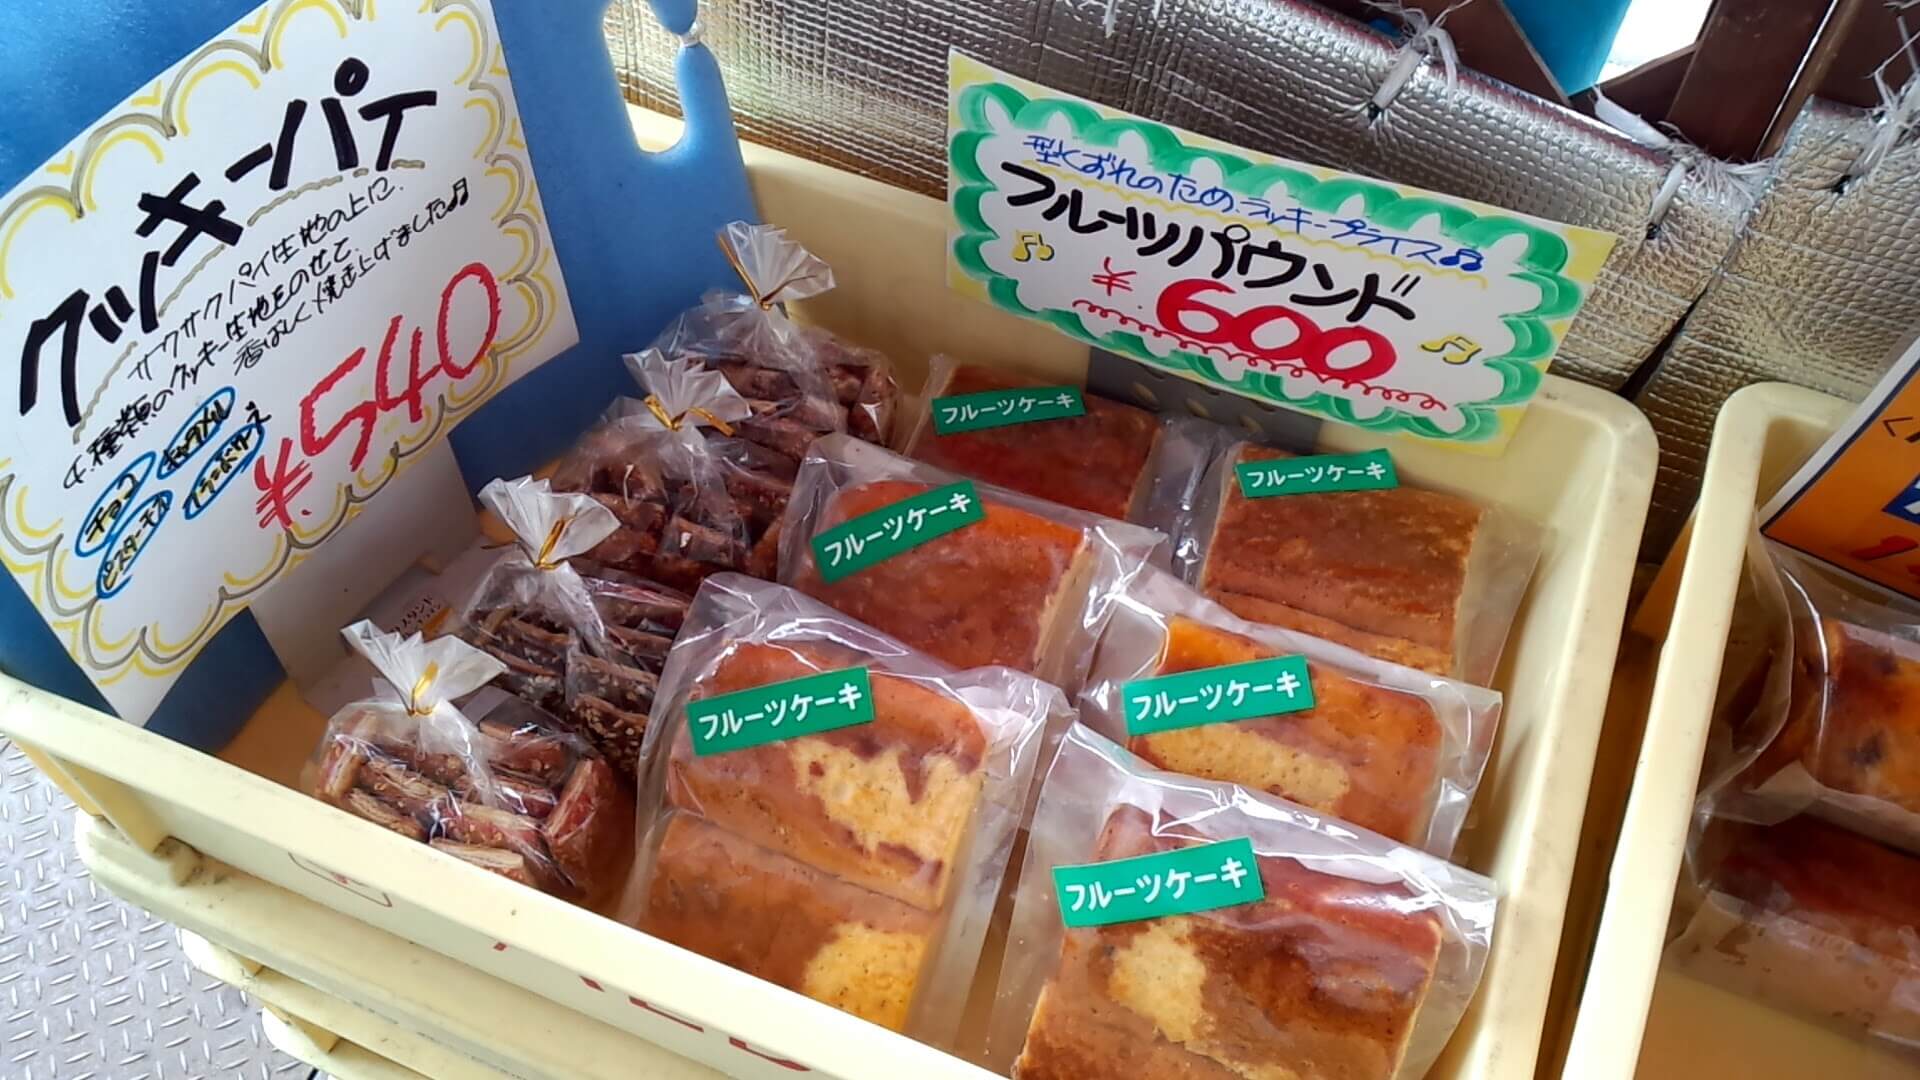 アウトレットのスイーツが買える横浜の老舗洋菓子メーカー アルベリに行ってきました 1 エフペリ